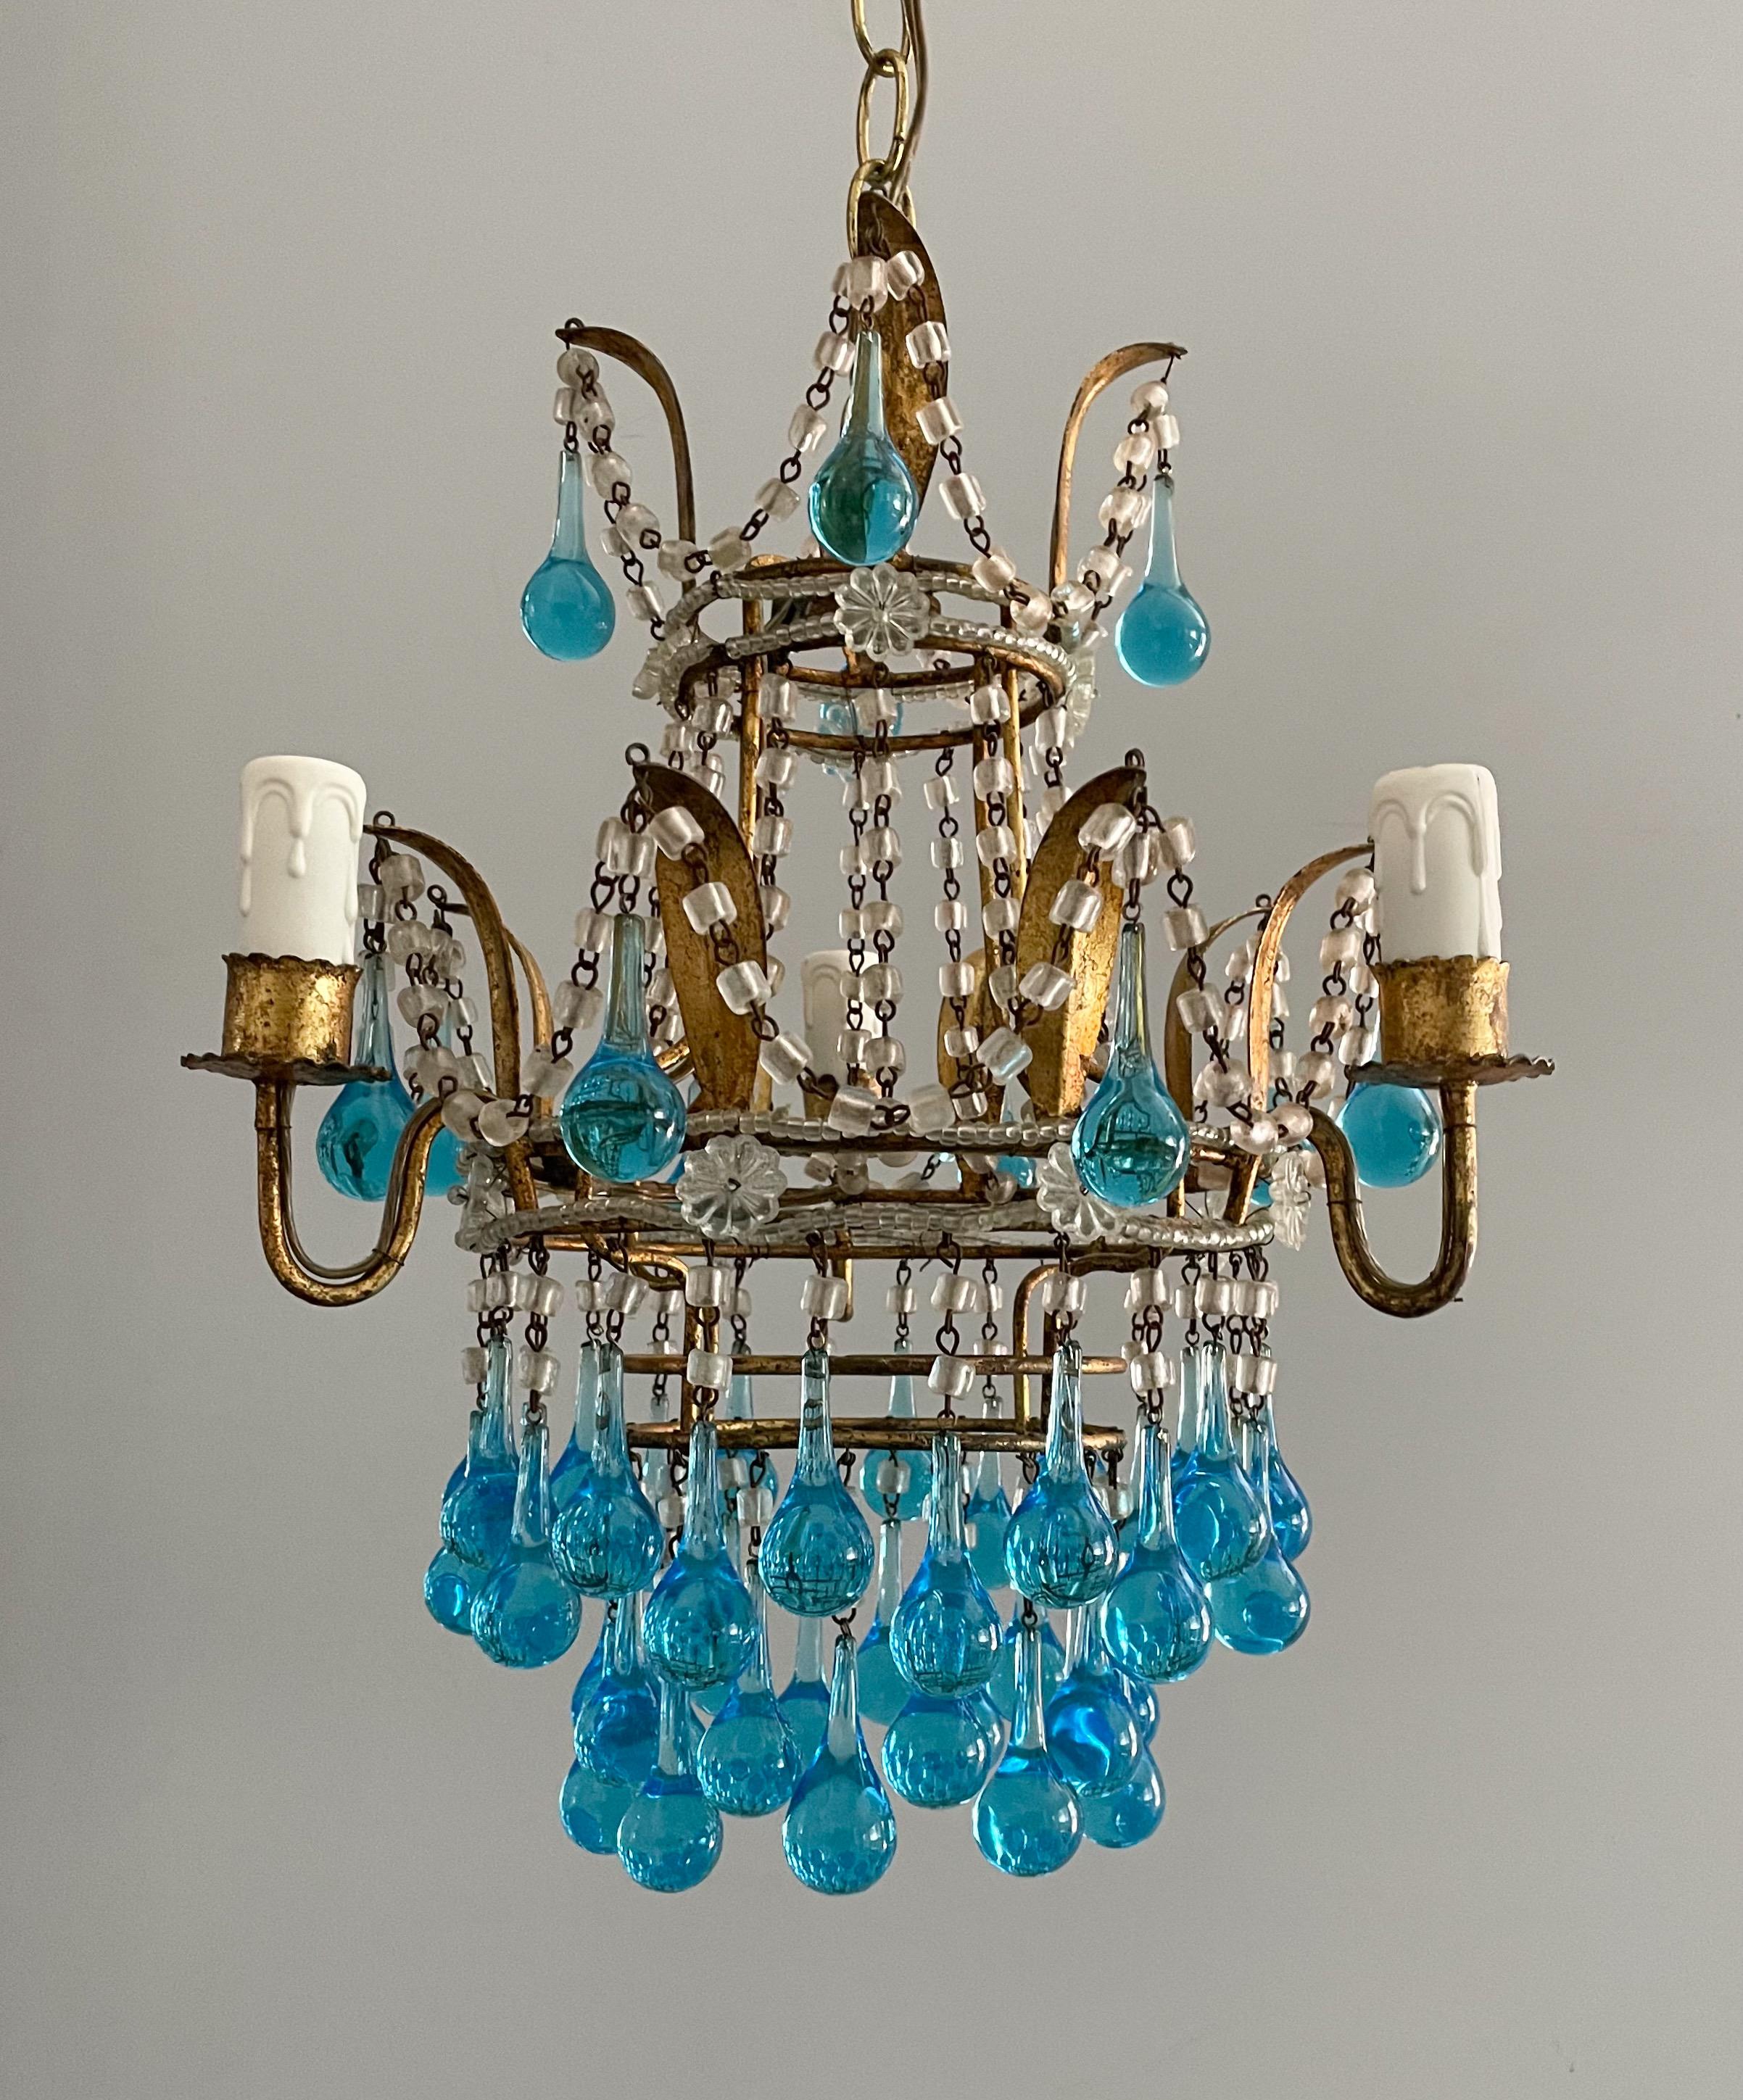 Wunderschöner italienischer Kronleuchter aus vergoldetem Eisen und Kristallperlen mit Murano-Glastropfen aus den 1940er Jahren.

Der Kronleuchter hat einen vergoldeten Eisenrahmen in Form einer Blätterkrone, die mit Makkaroni-Glasperlen und blauen